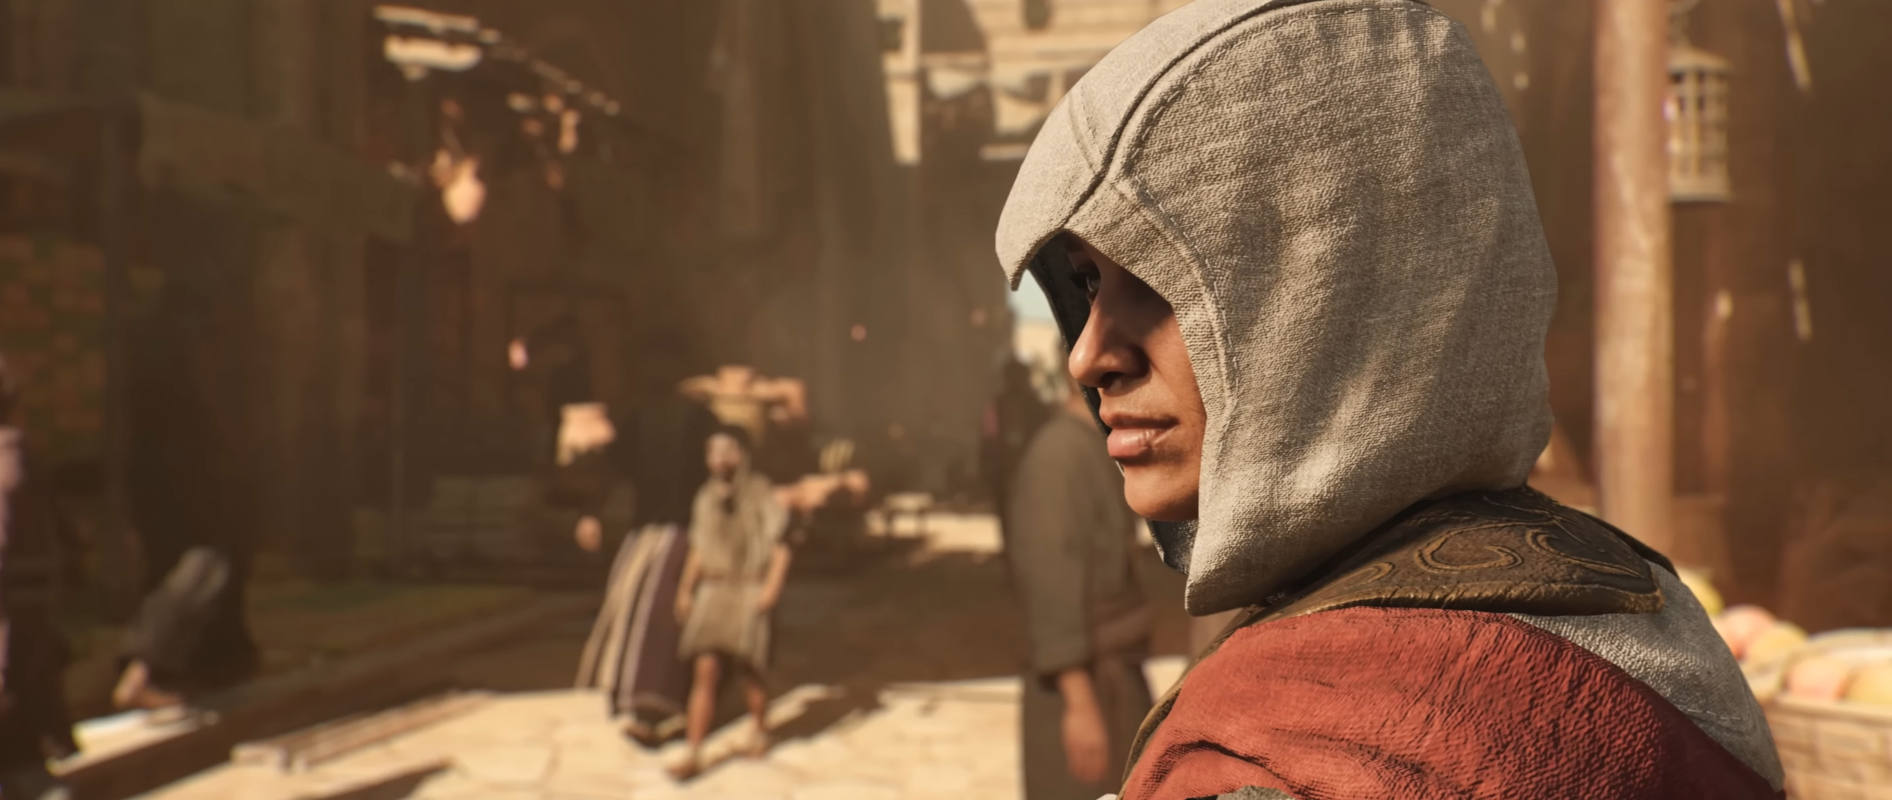 Экшн Assassin's Creed Mirage обзавелся релизным трейлером